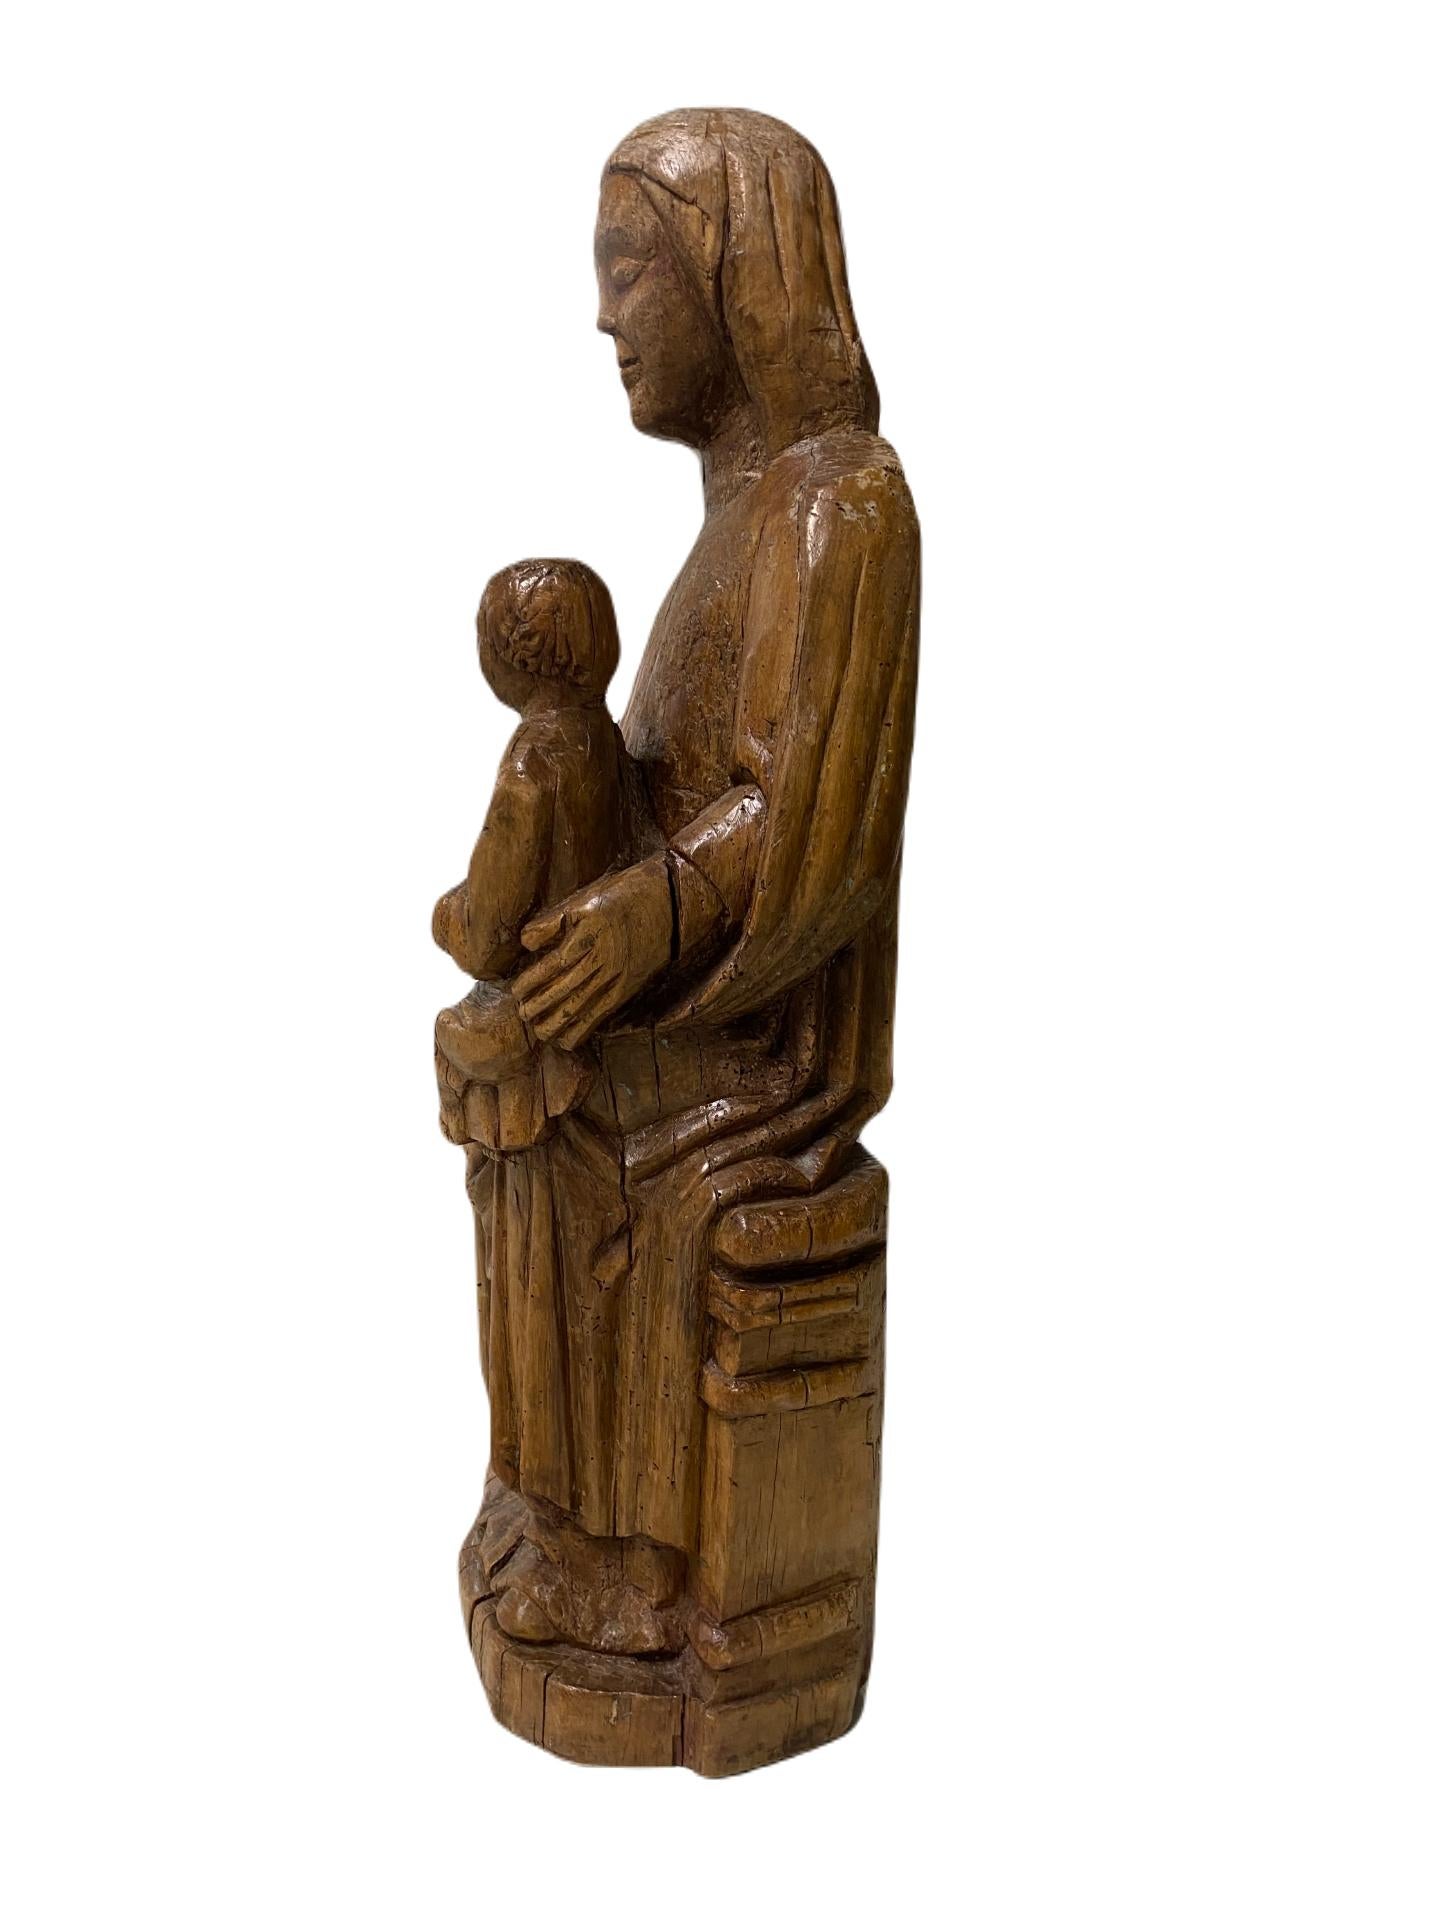 Inthronisierte Madonna mit Kind.  (Mittelalterlich), Sculpture, von Unknown